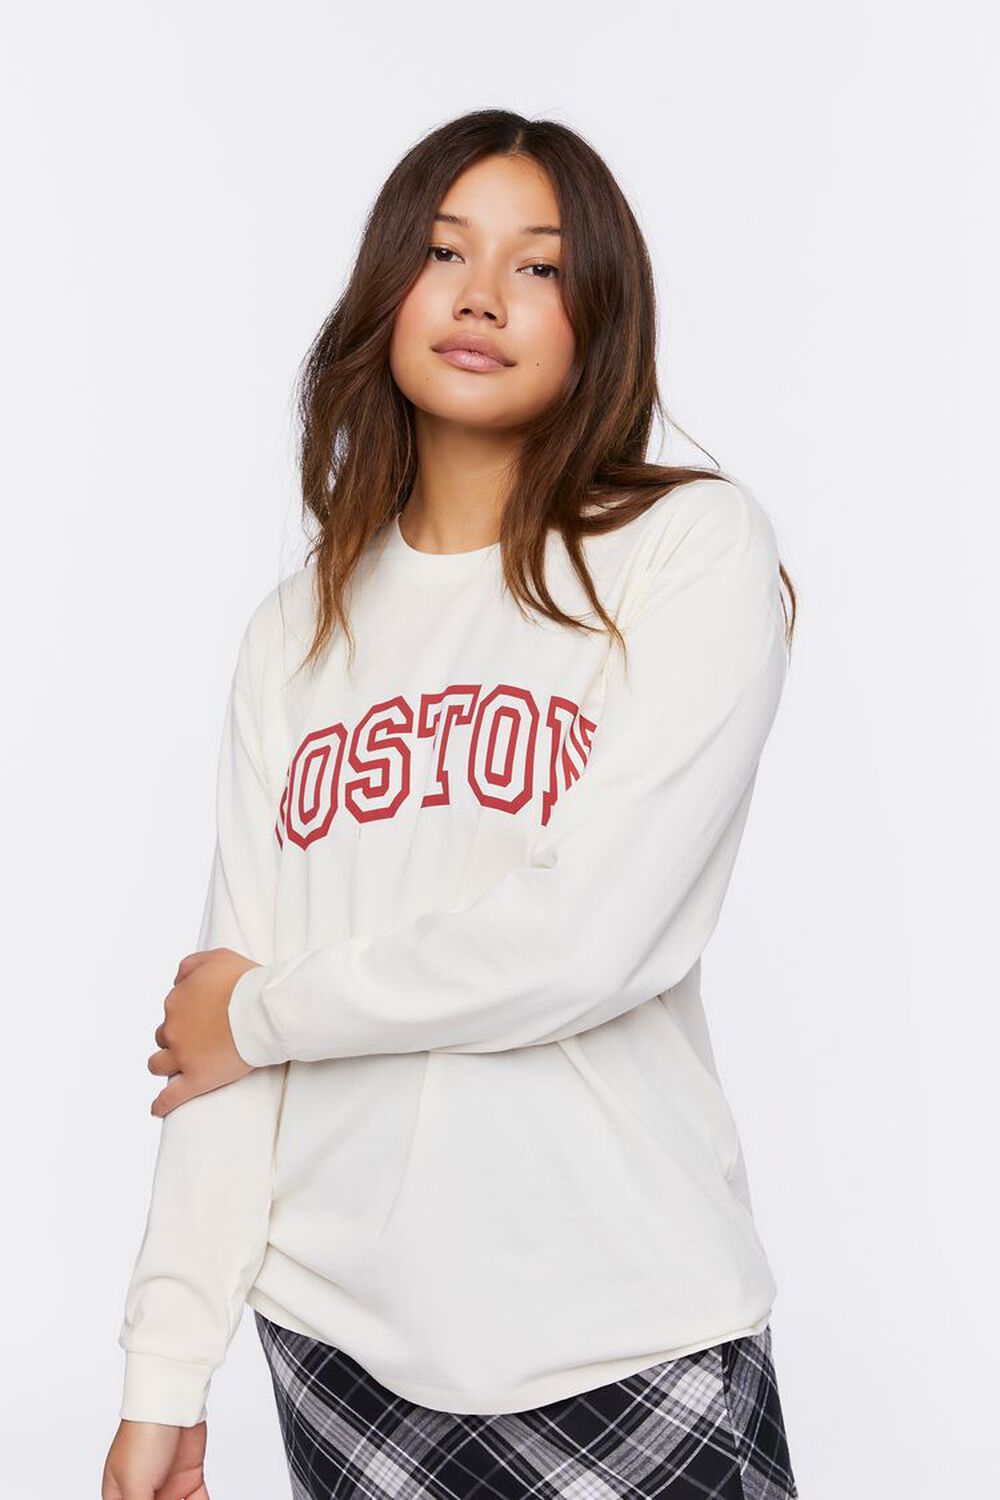 Forever 21, Tops, Forever 2 Boston Light Sweatshirt